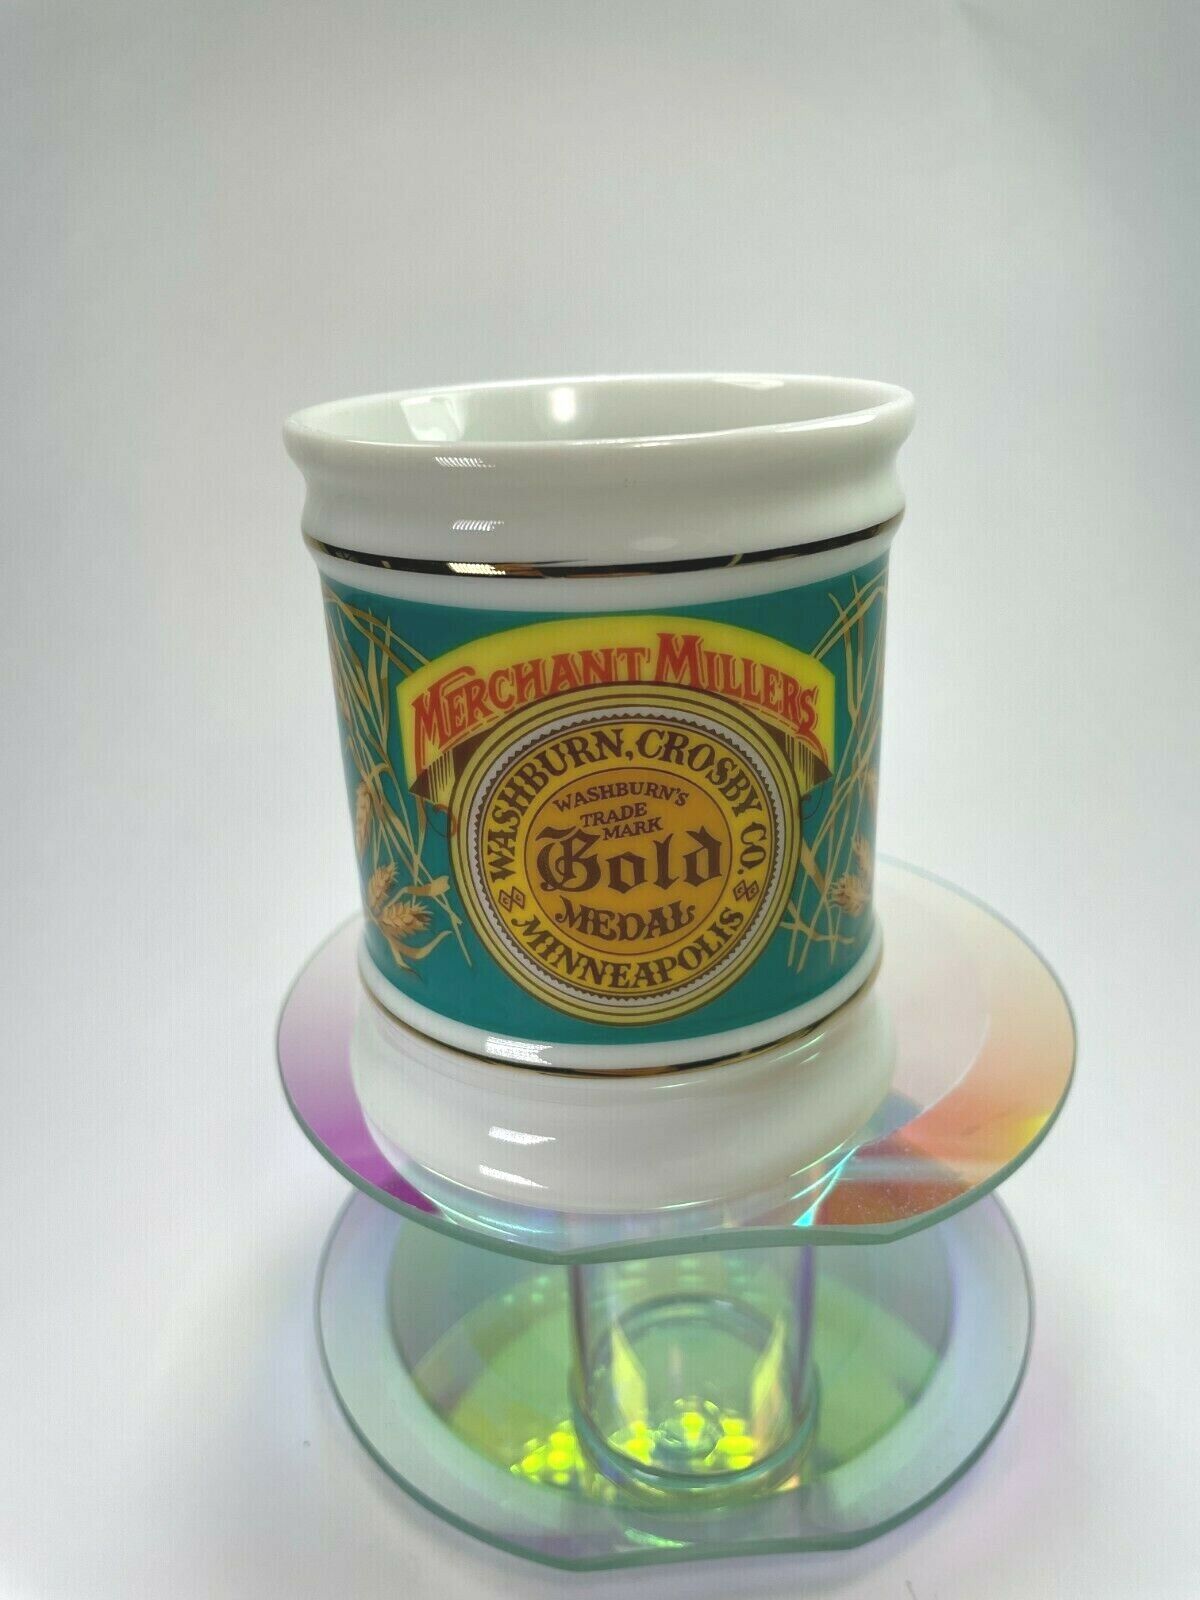  Merchant Millers Gold Medal The Corner Store Franklin Mint Porcelain Mug C35